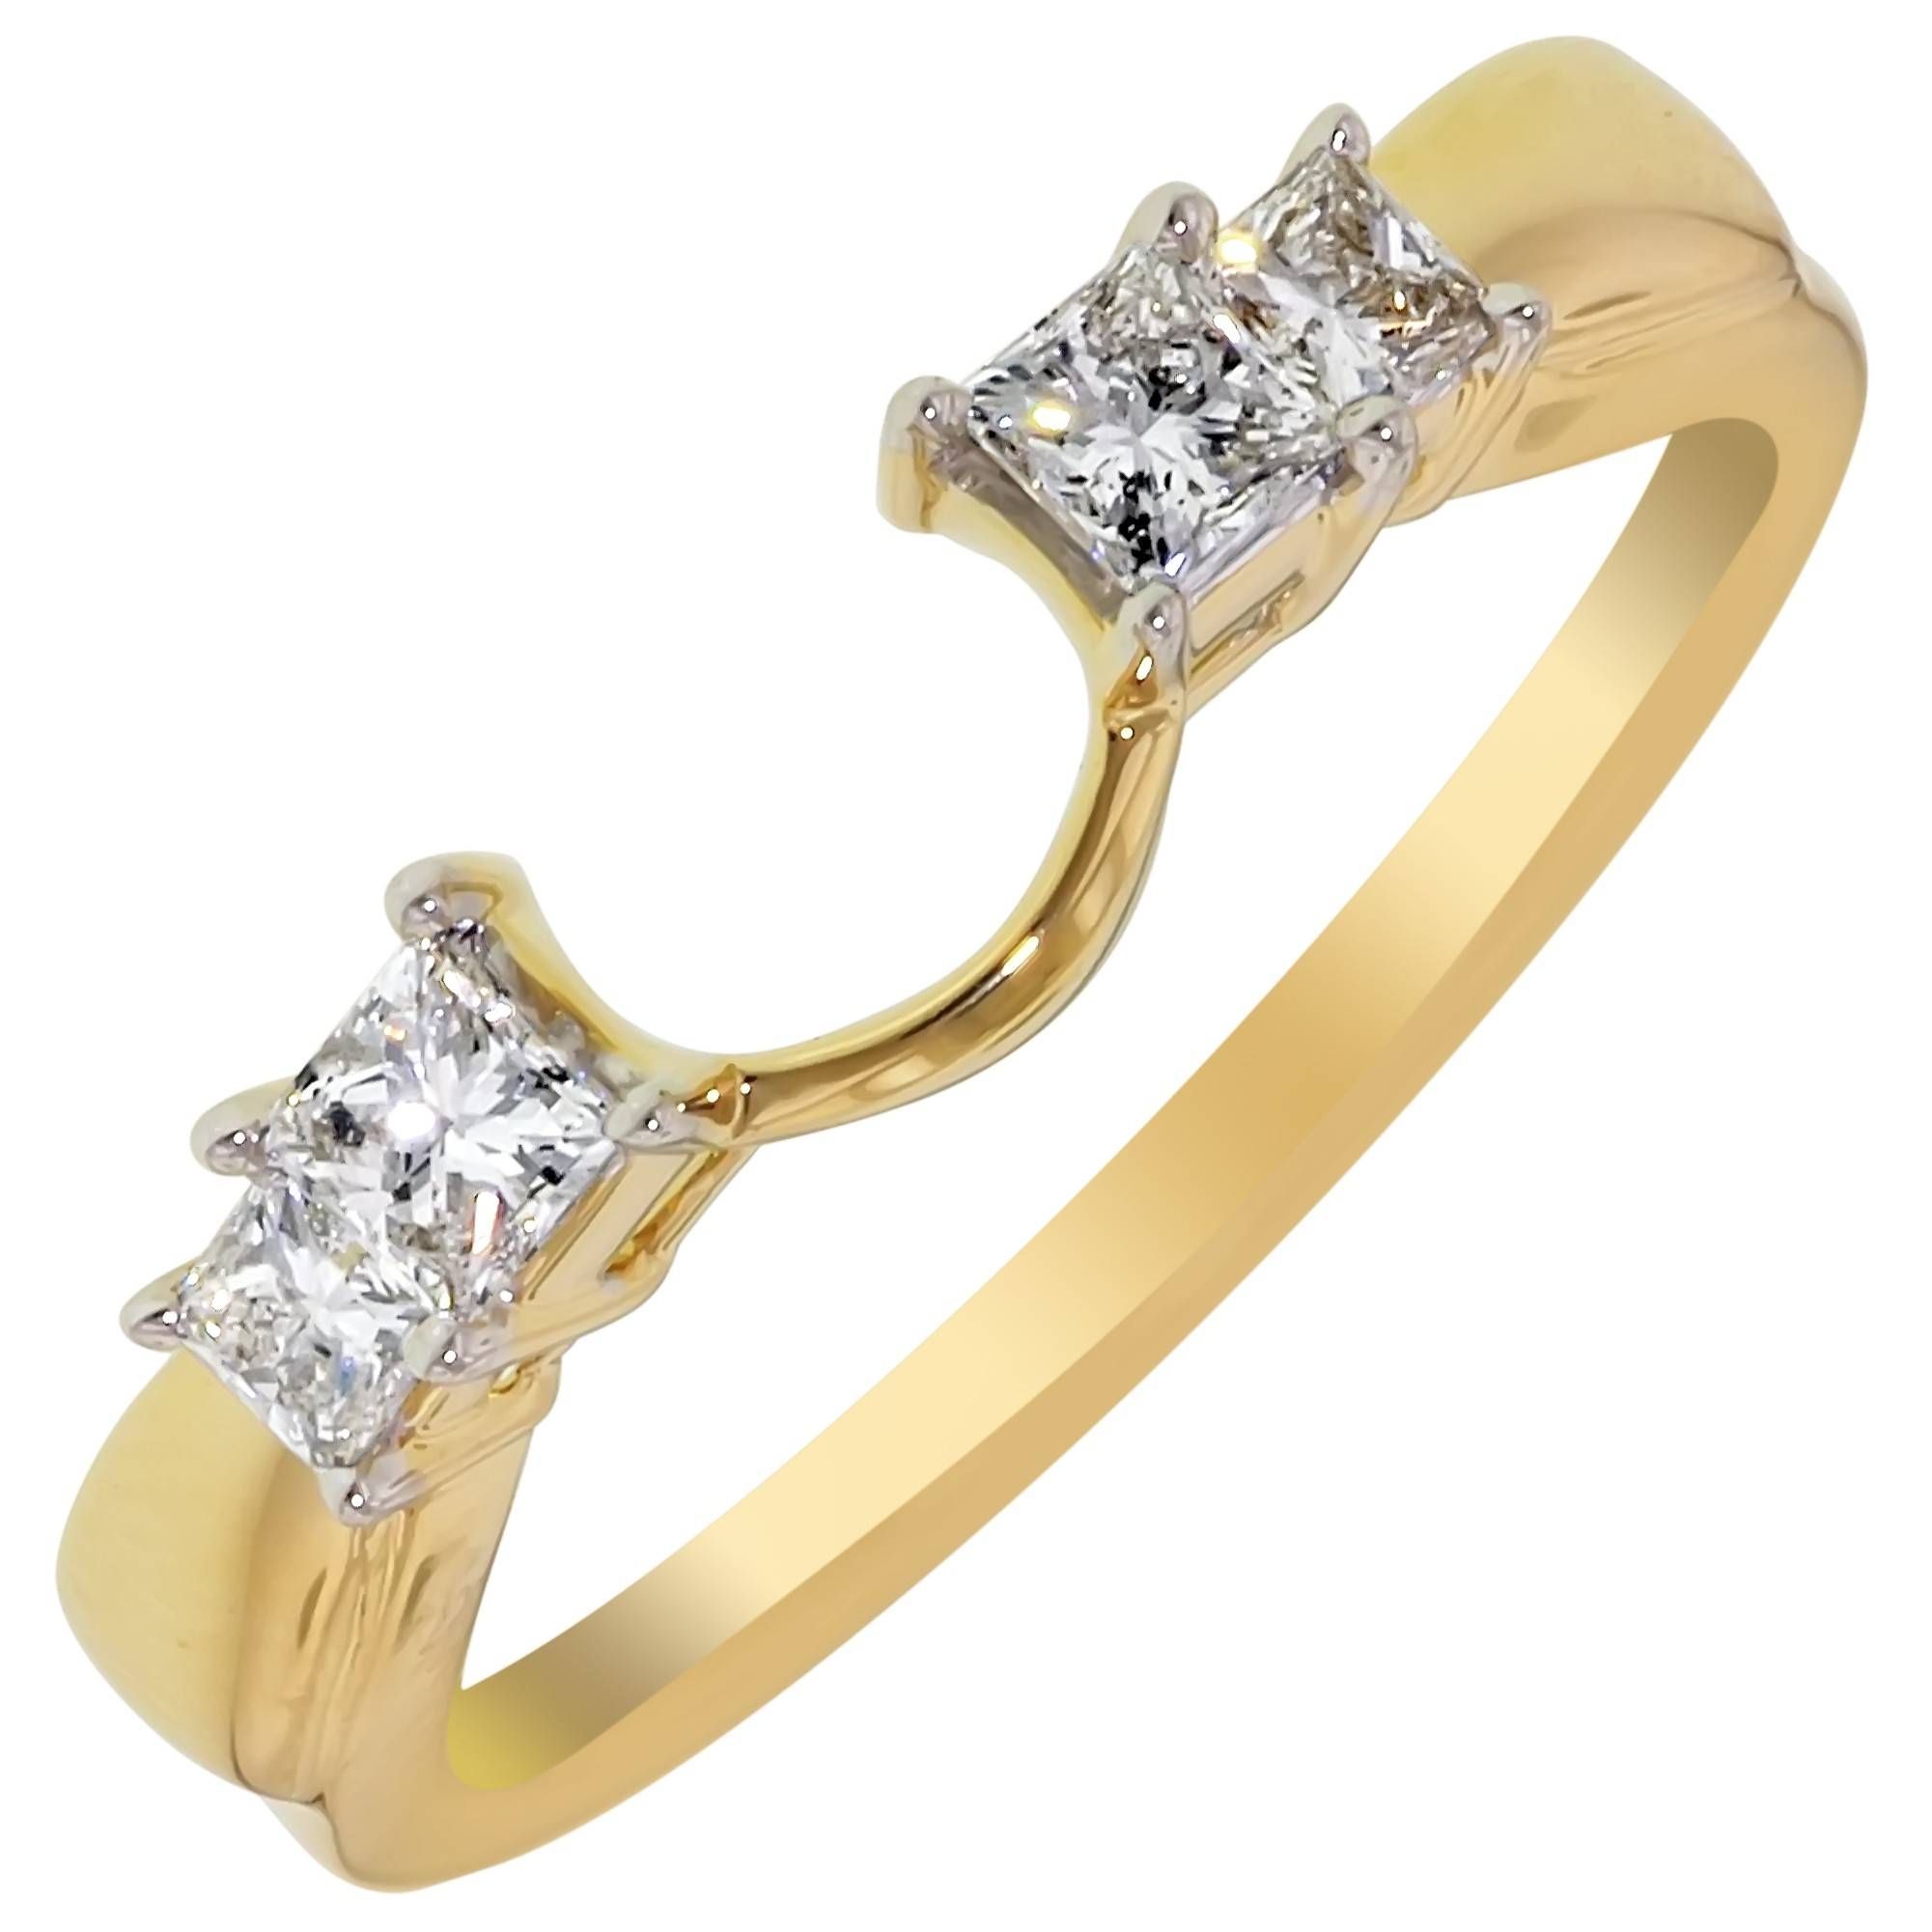 Wedding Rings : Male Wedding Rings Wedding Wraps Engagement Ring Regarding Wrap Around Engagement Rings Wedding Band (View 9 of 15)